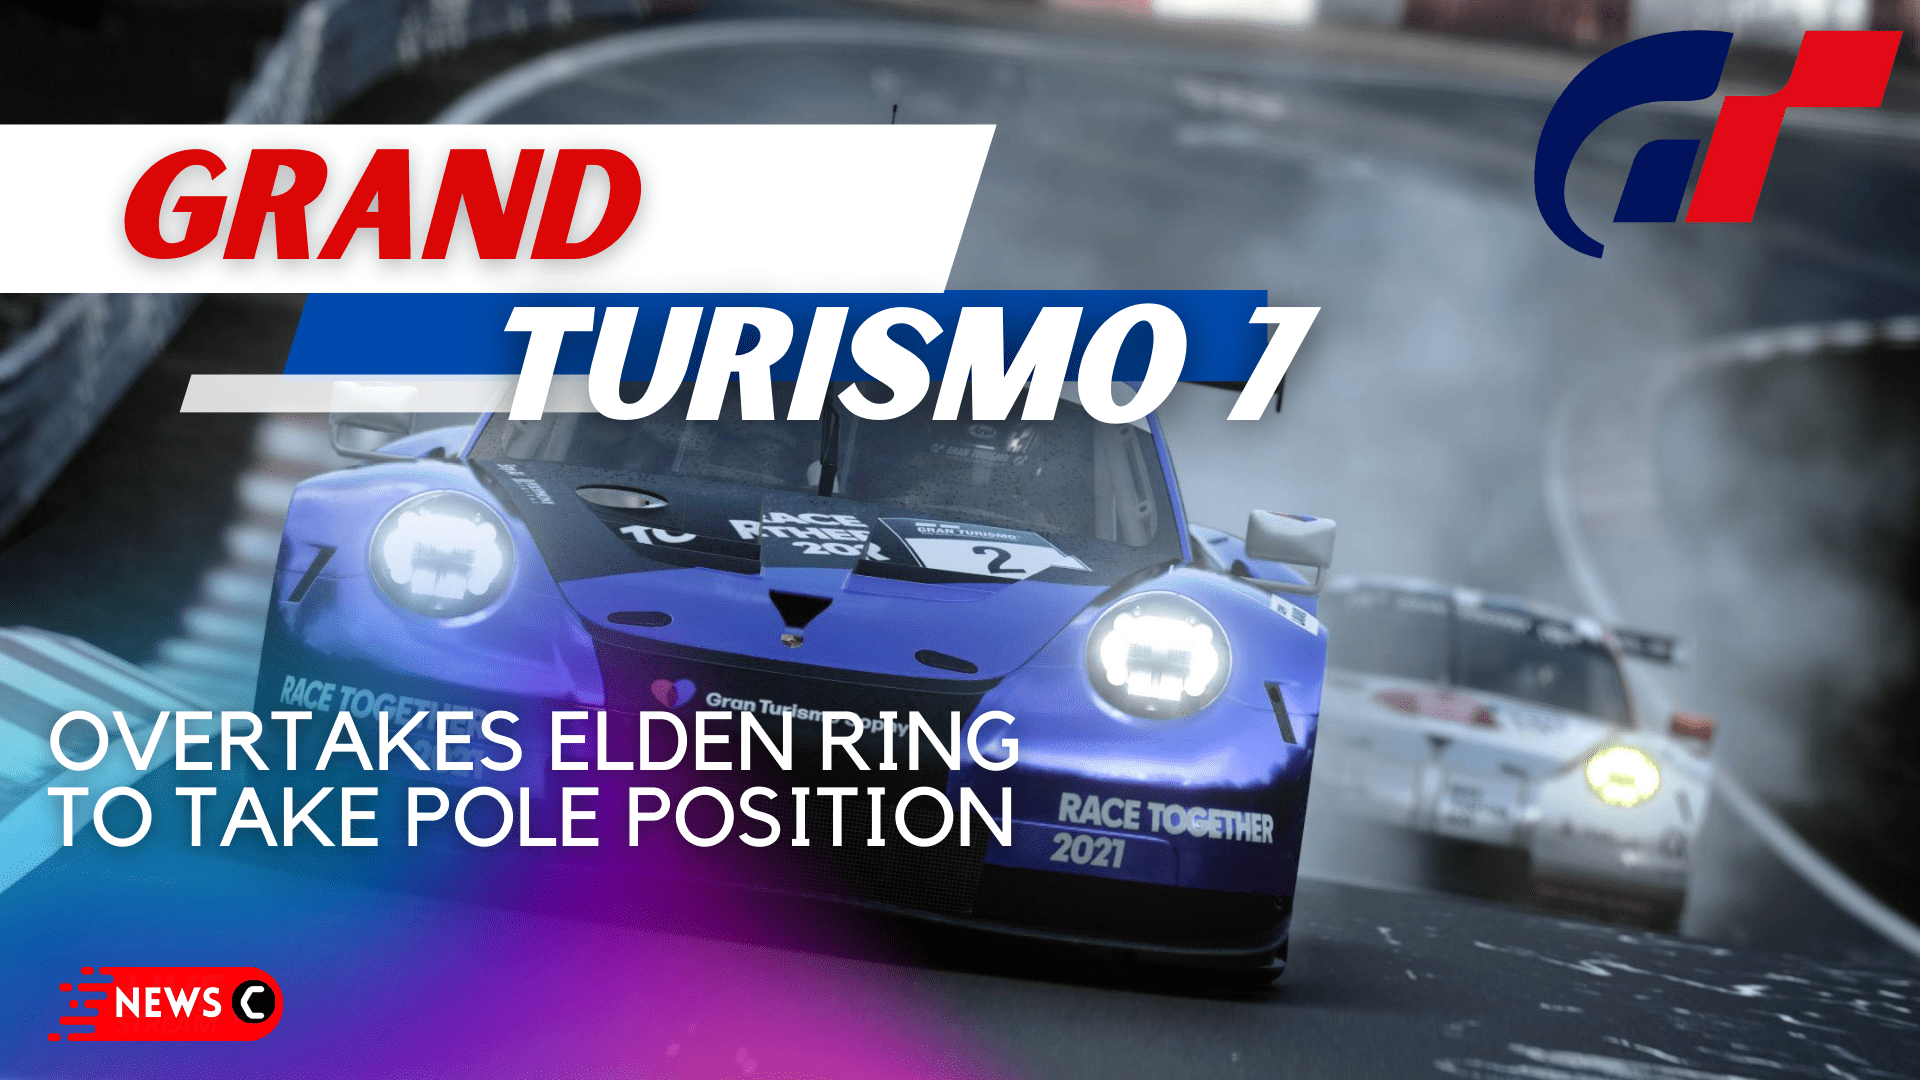 Gran Turismo 7 overtakes Elden Ring to take pole position